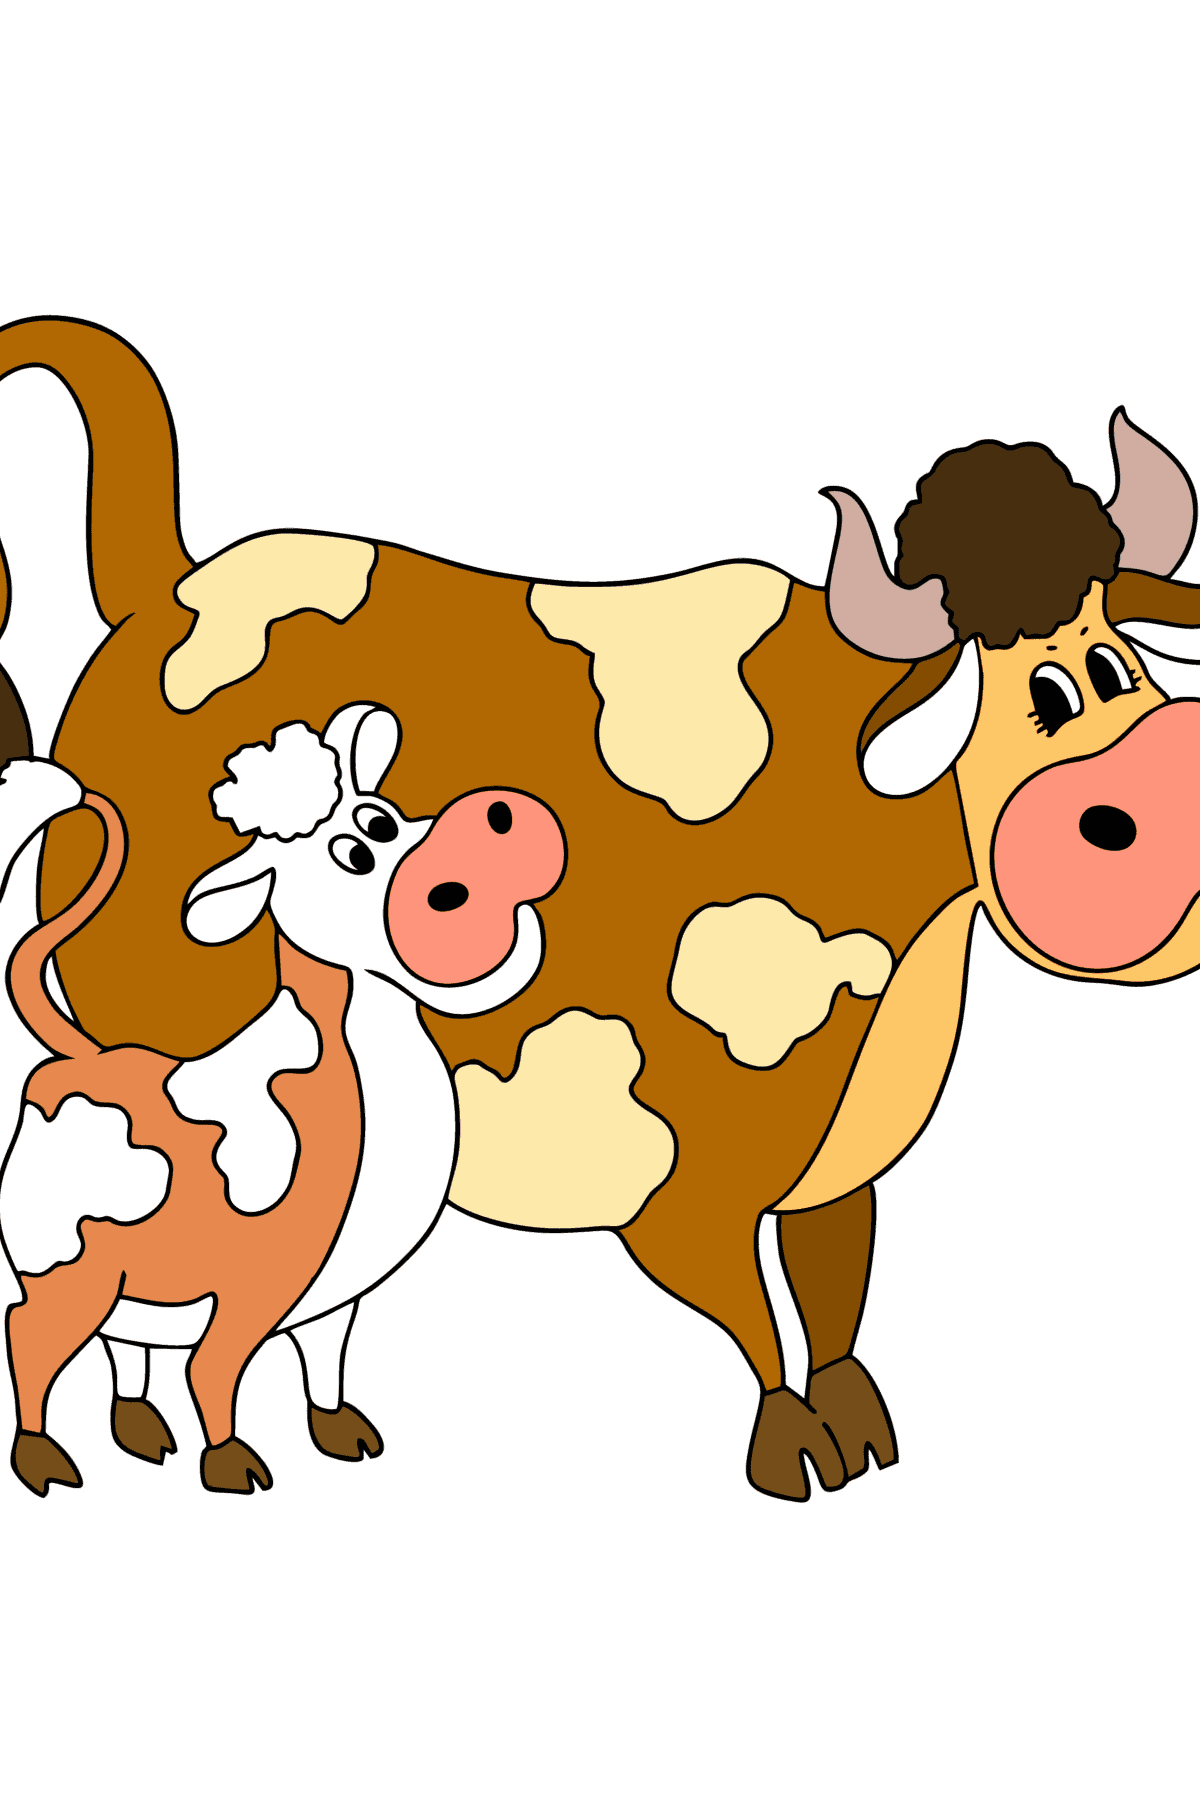 Ausmalbild Kuh mit Kälbchen - Malvorlagen für Kinder